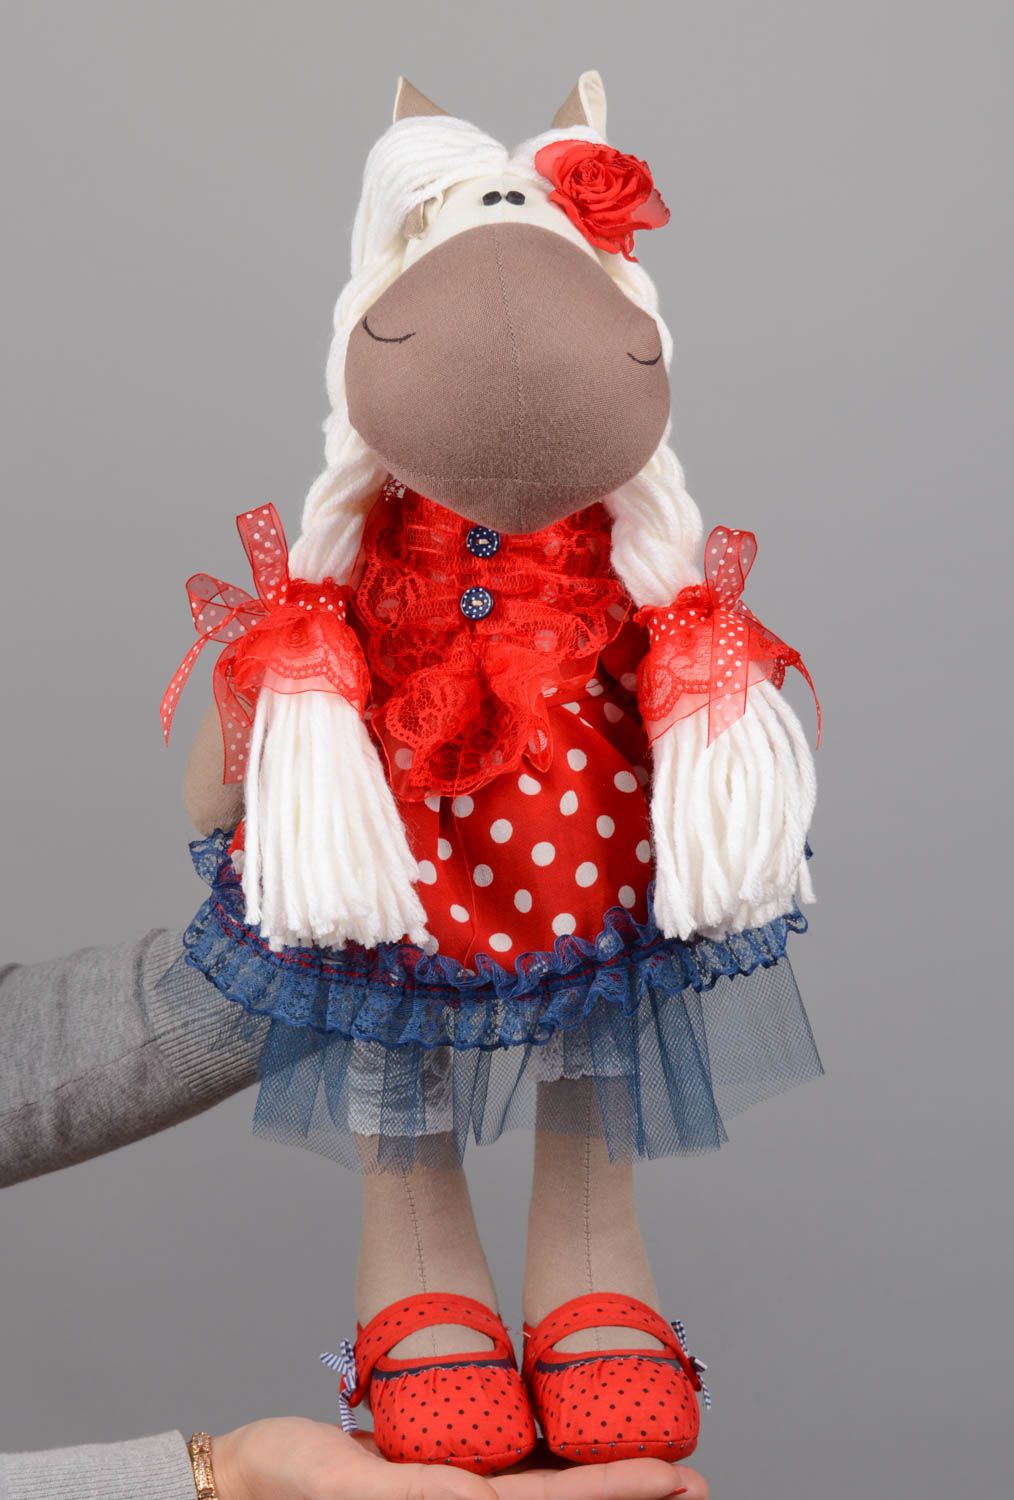 Textil Kuscheltier Pferd niedlich Spielzeug für Kinder und Dekor nette Schöne foto 5